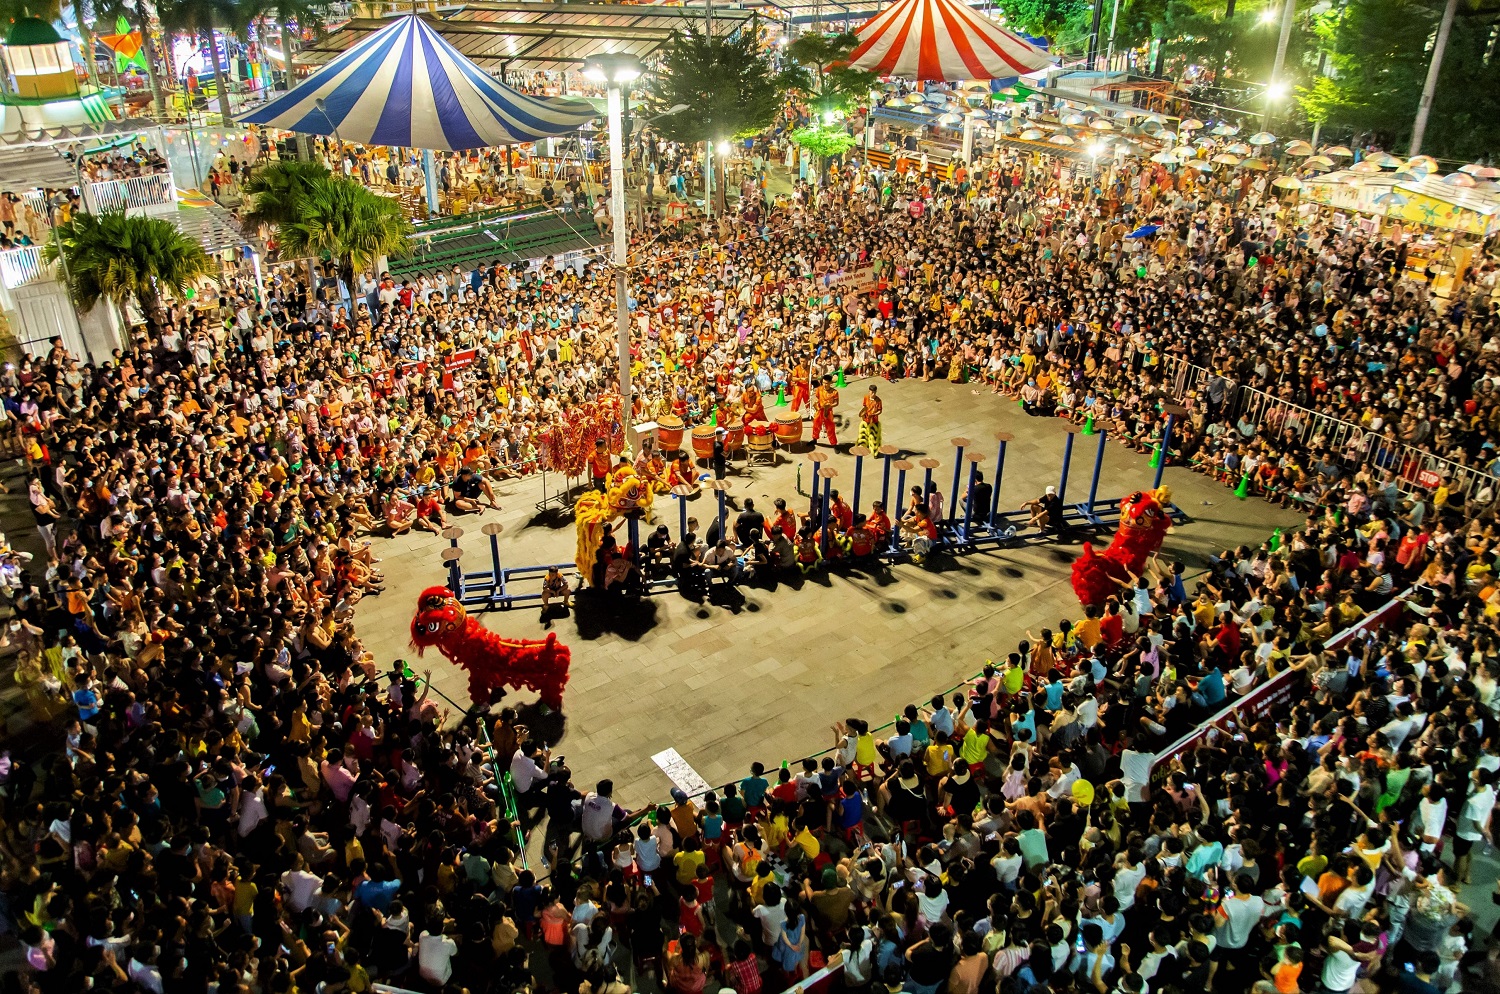 Hàng nghìn người chen chân xem múa lân, chợ đêm Đà Nẵng ken kín lối - Ảnh 3.